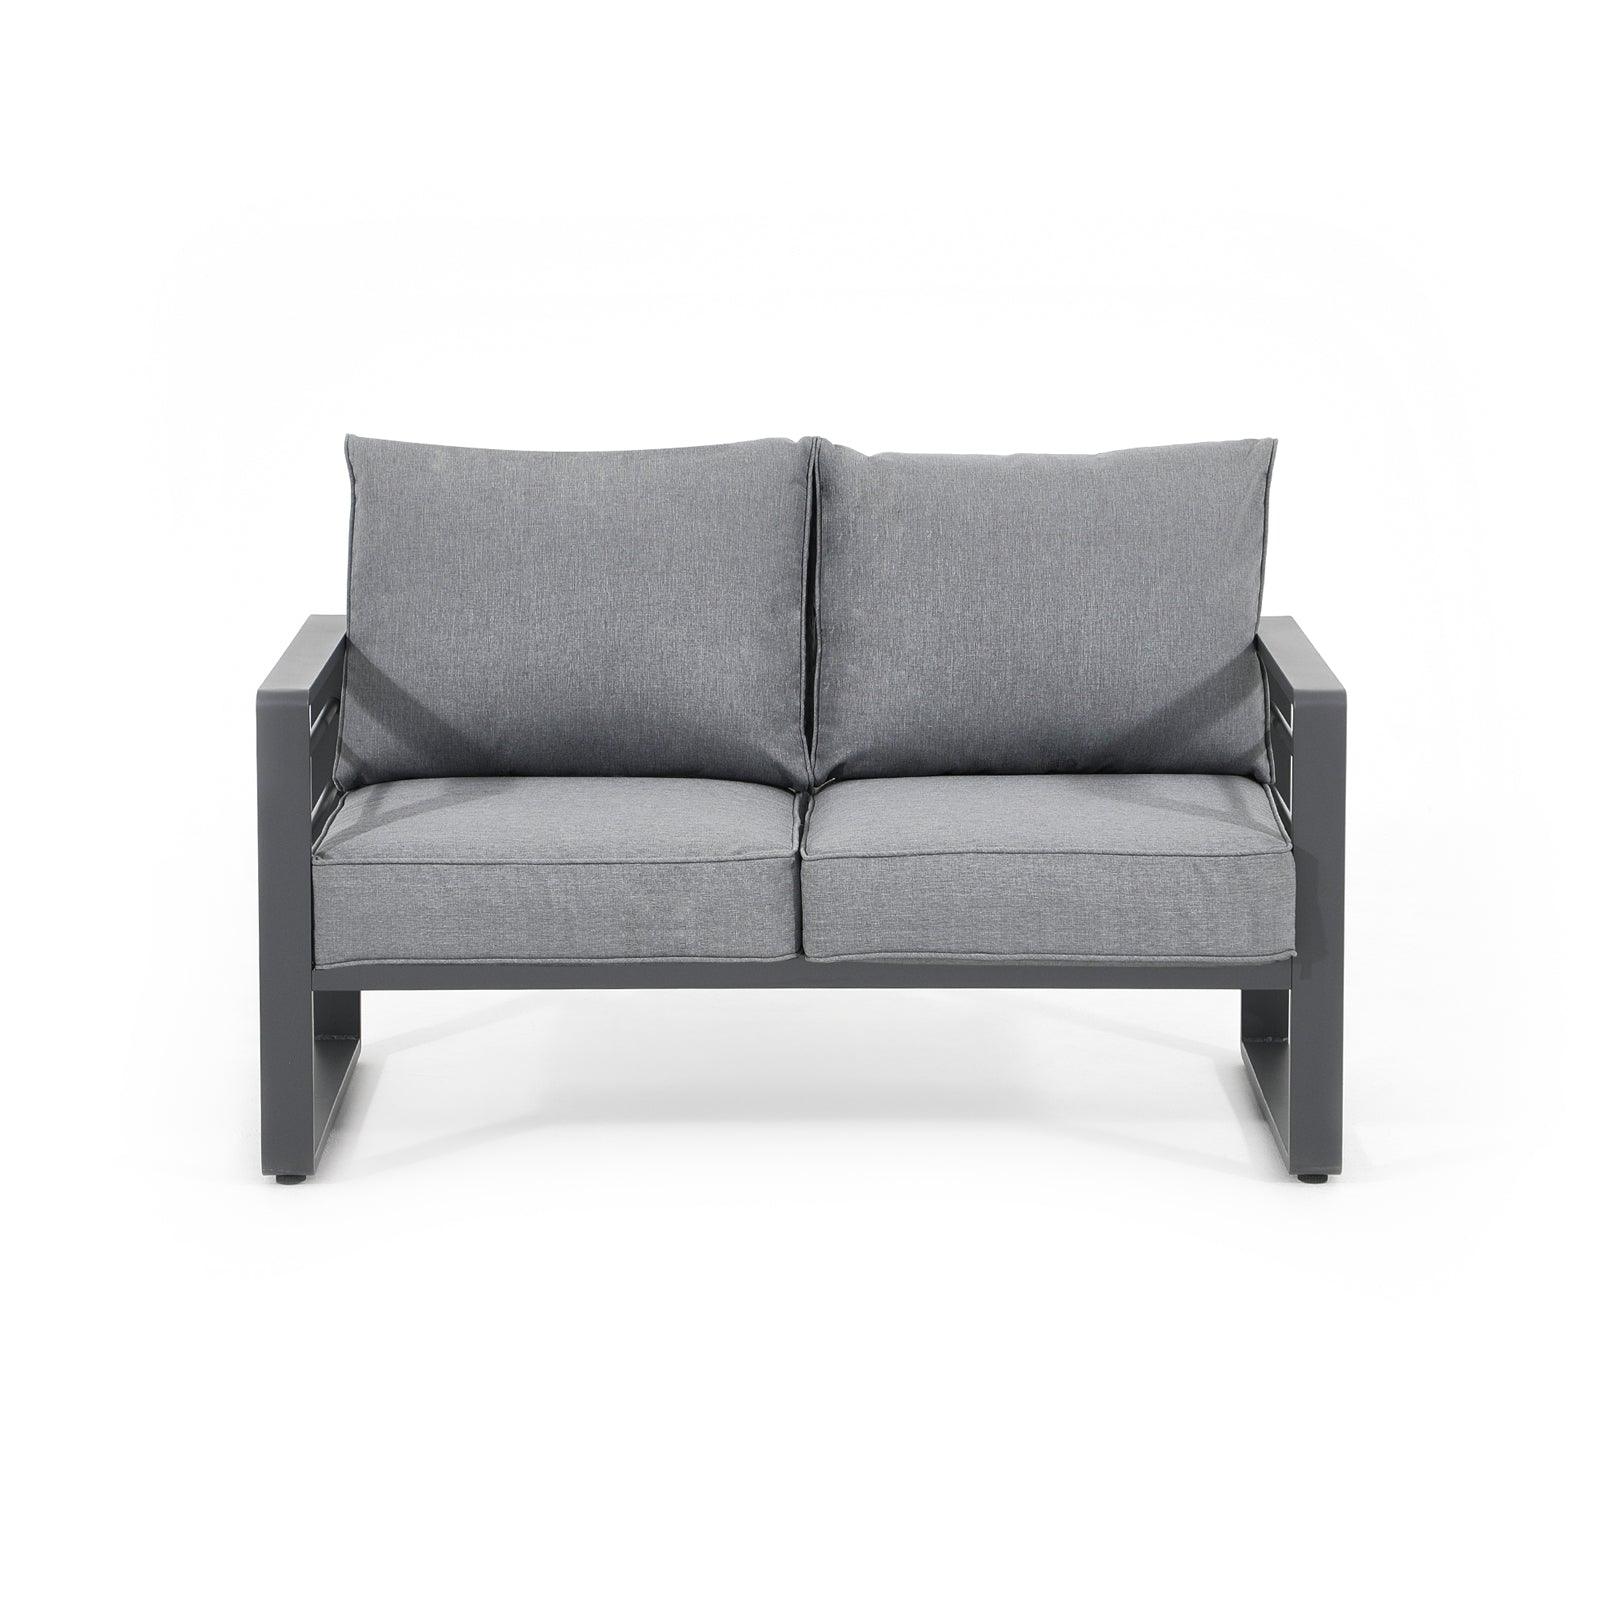 Salina Modern Aluminum Outdoor Furniture, Grey Aluminum Frame Outdoor Loveseat with Grey Cushions - Jardina Furniture